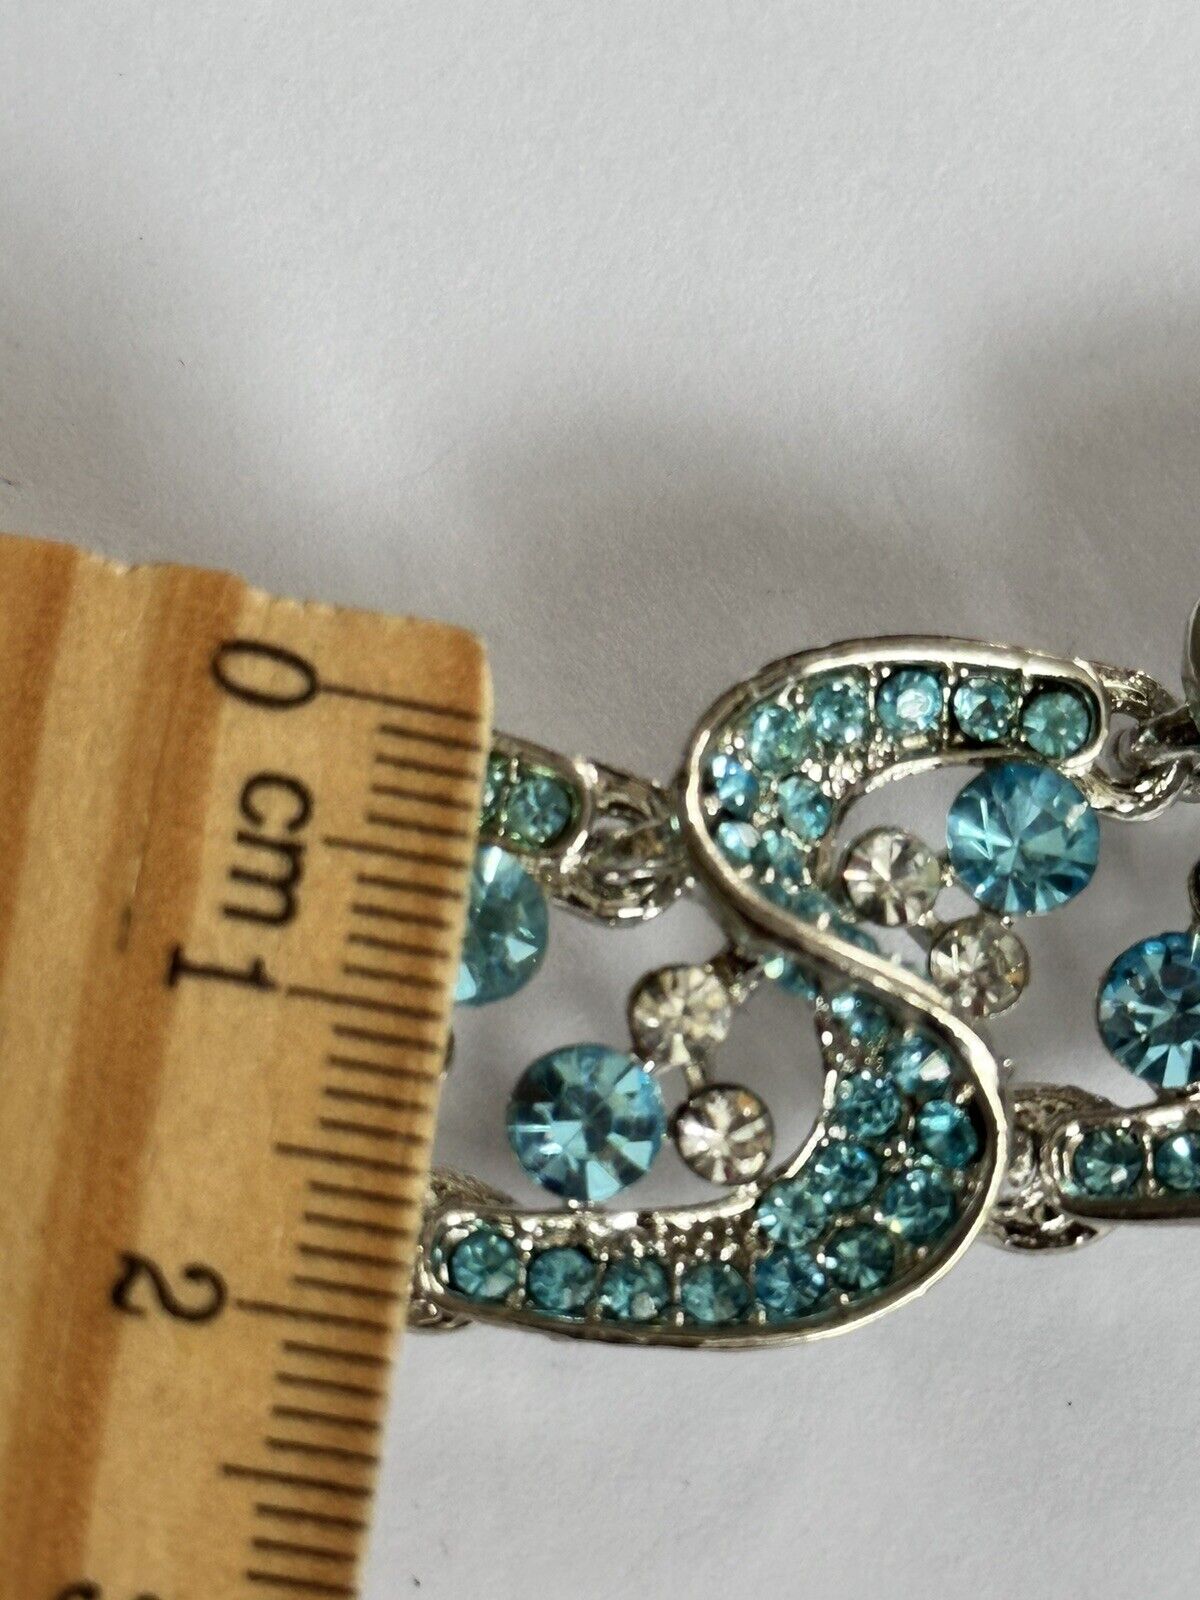 Vintage Silver Tone Blue Diamanté Statement Necklace